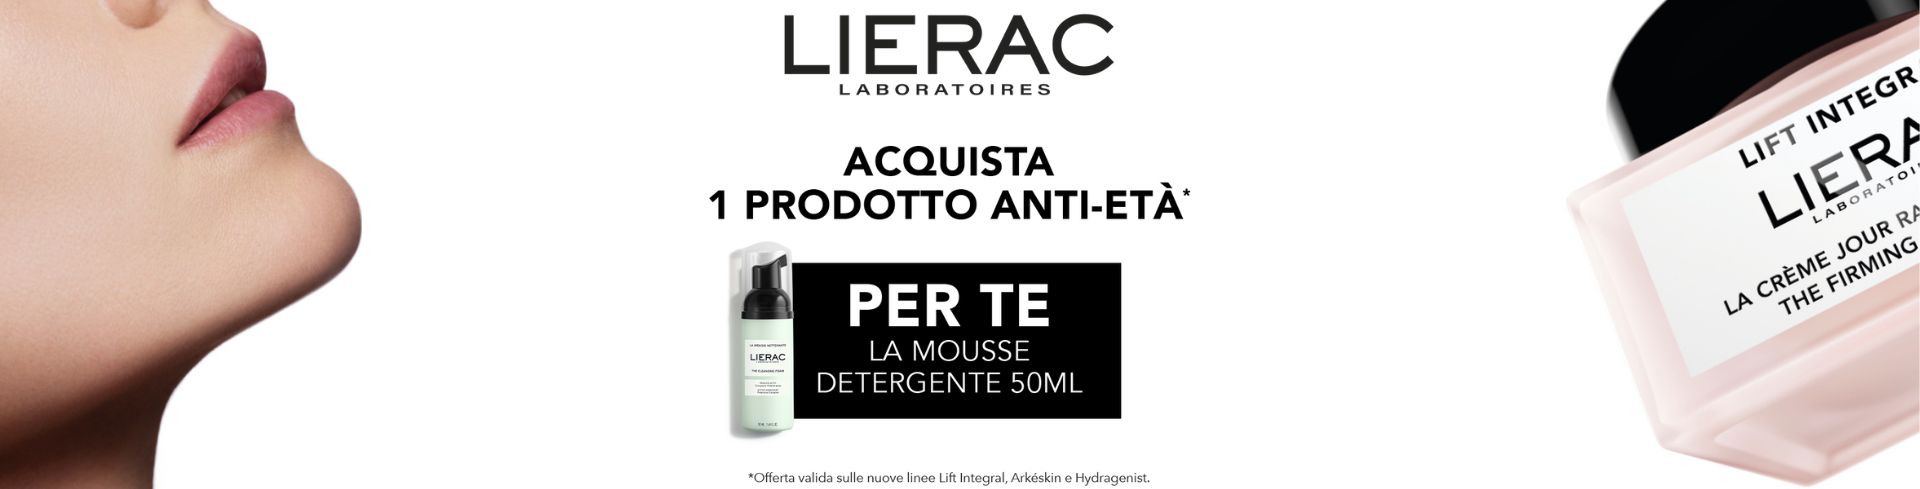 banner promozionale Lierac antiage desktop